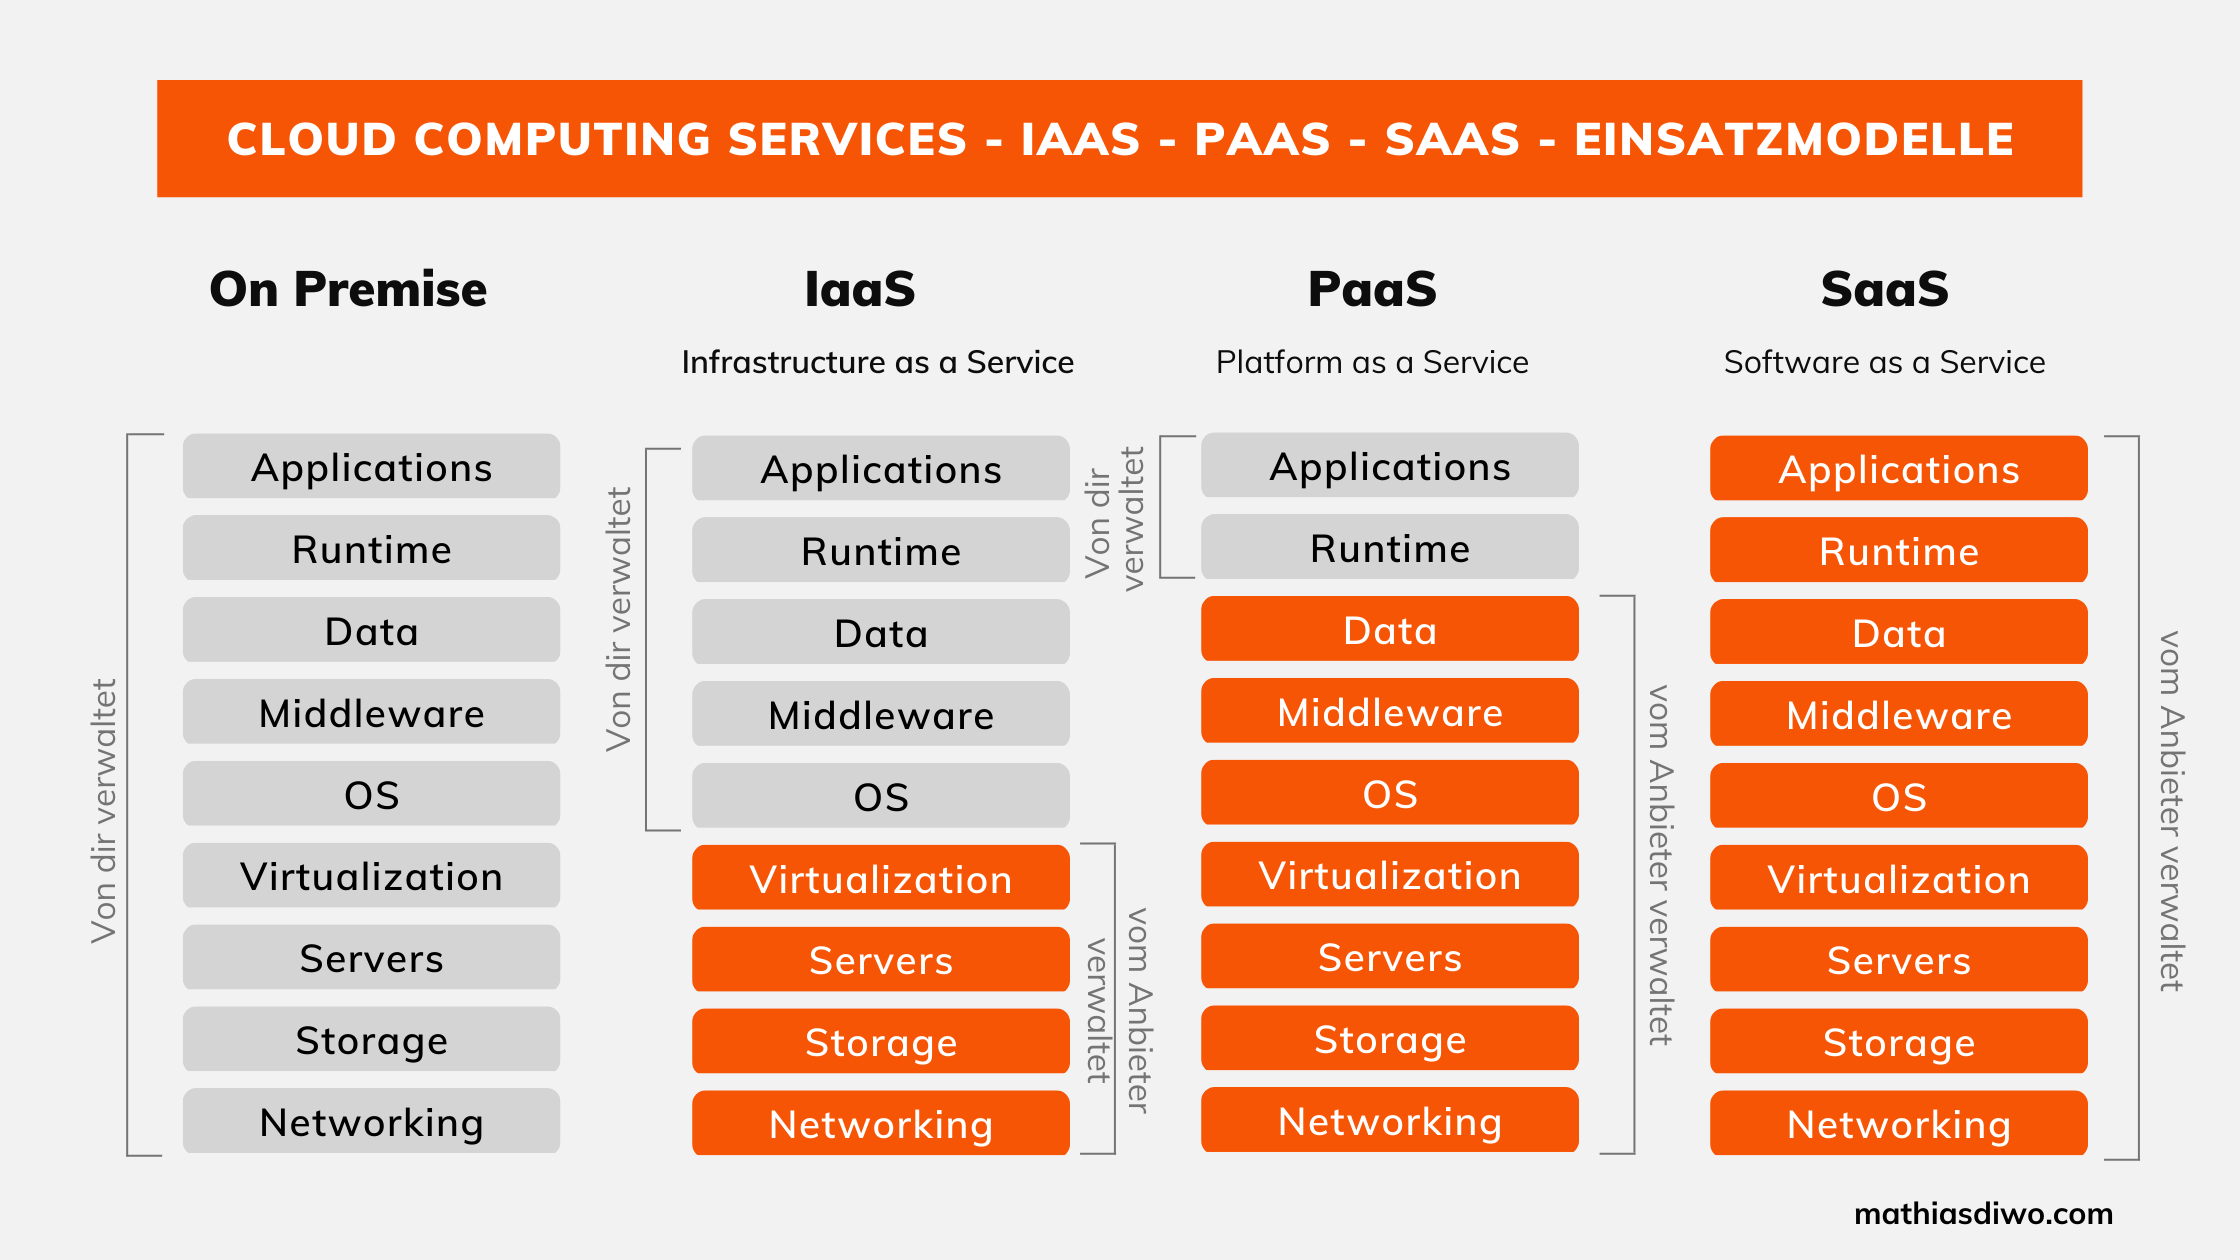 Cloud Computing Services - Iaas - PaaS - Saas Einsatzmodelle